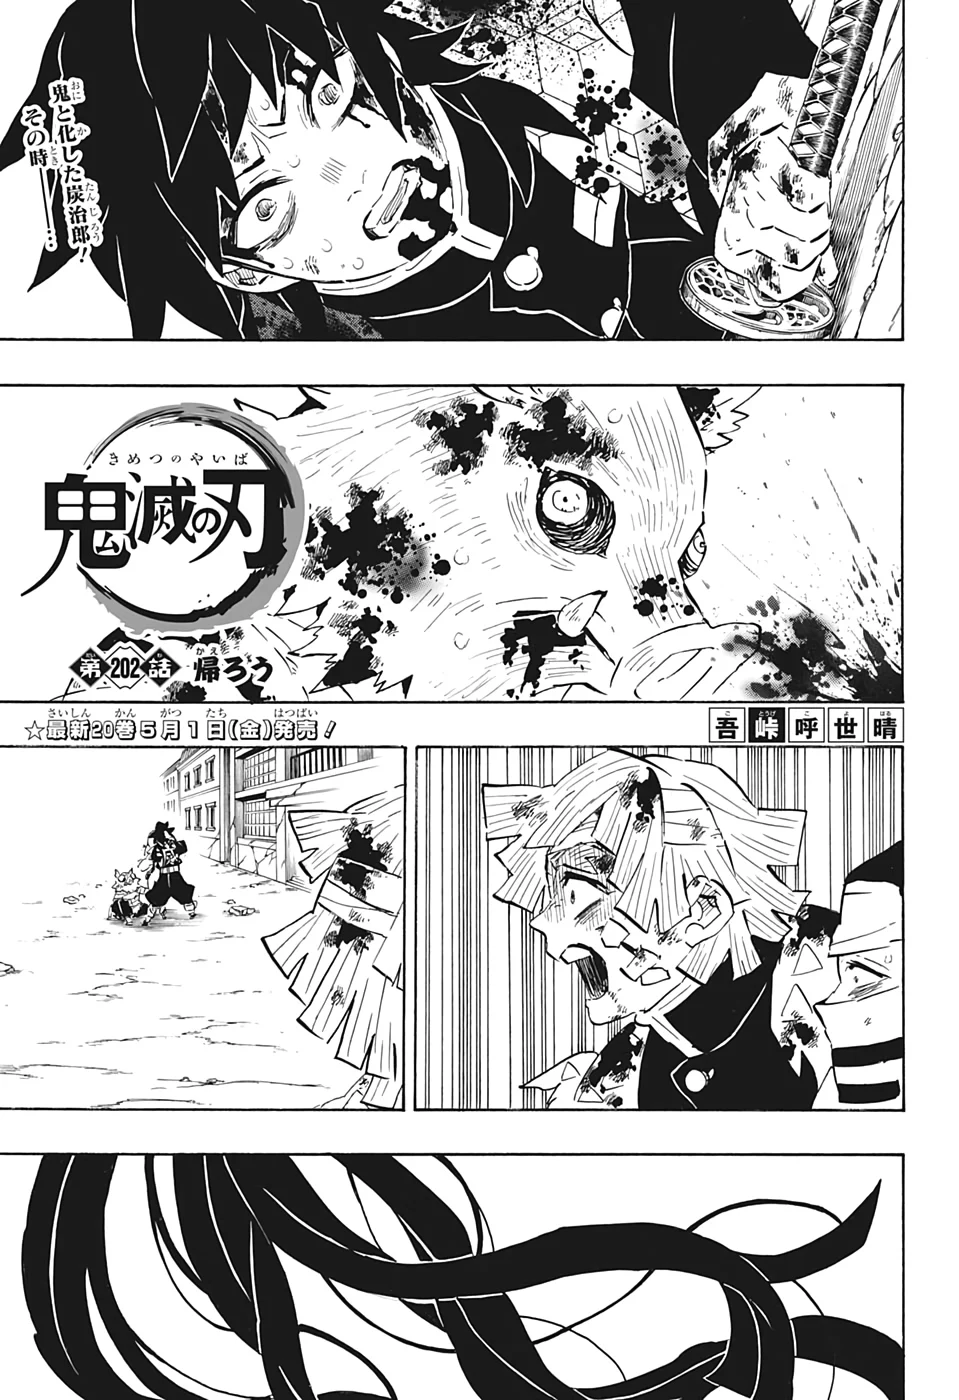 Demon Slayer: Kimetsu no Yaiba Chapter 203 - Kimetsu no Yaiba Manga Online